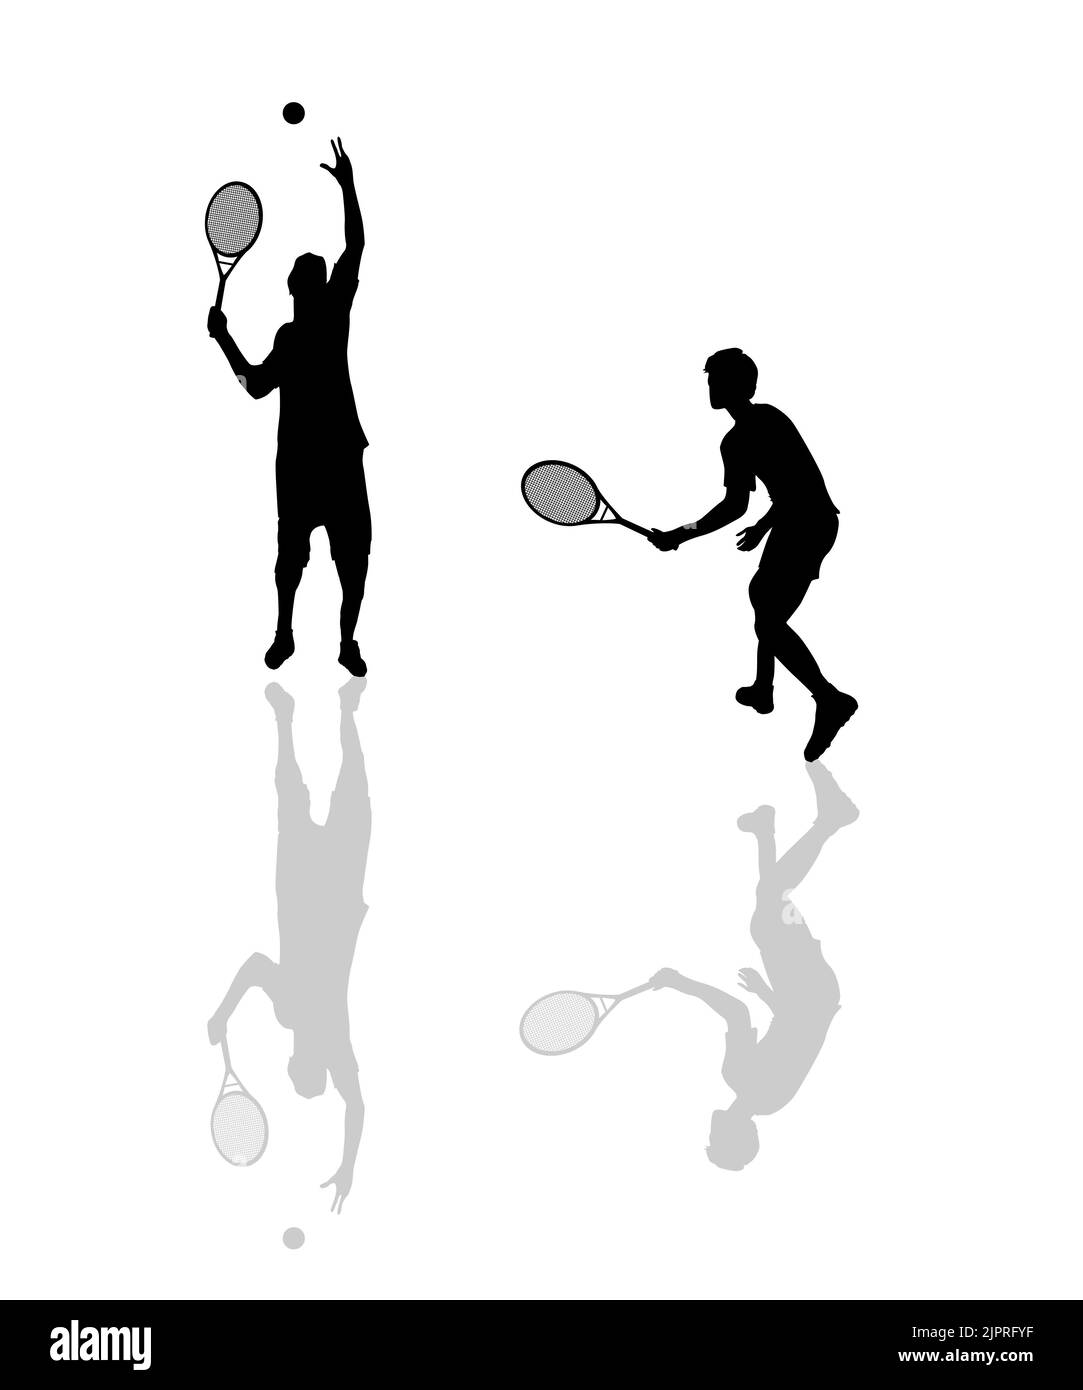 Silhouettes des joueurs de tennis sur fond blanc Banque D'Images